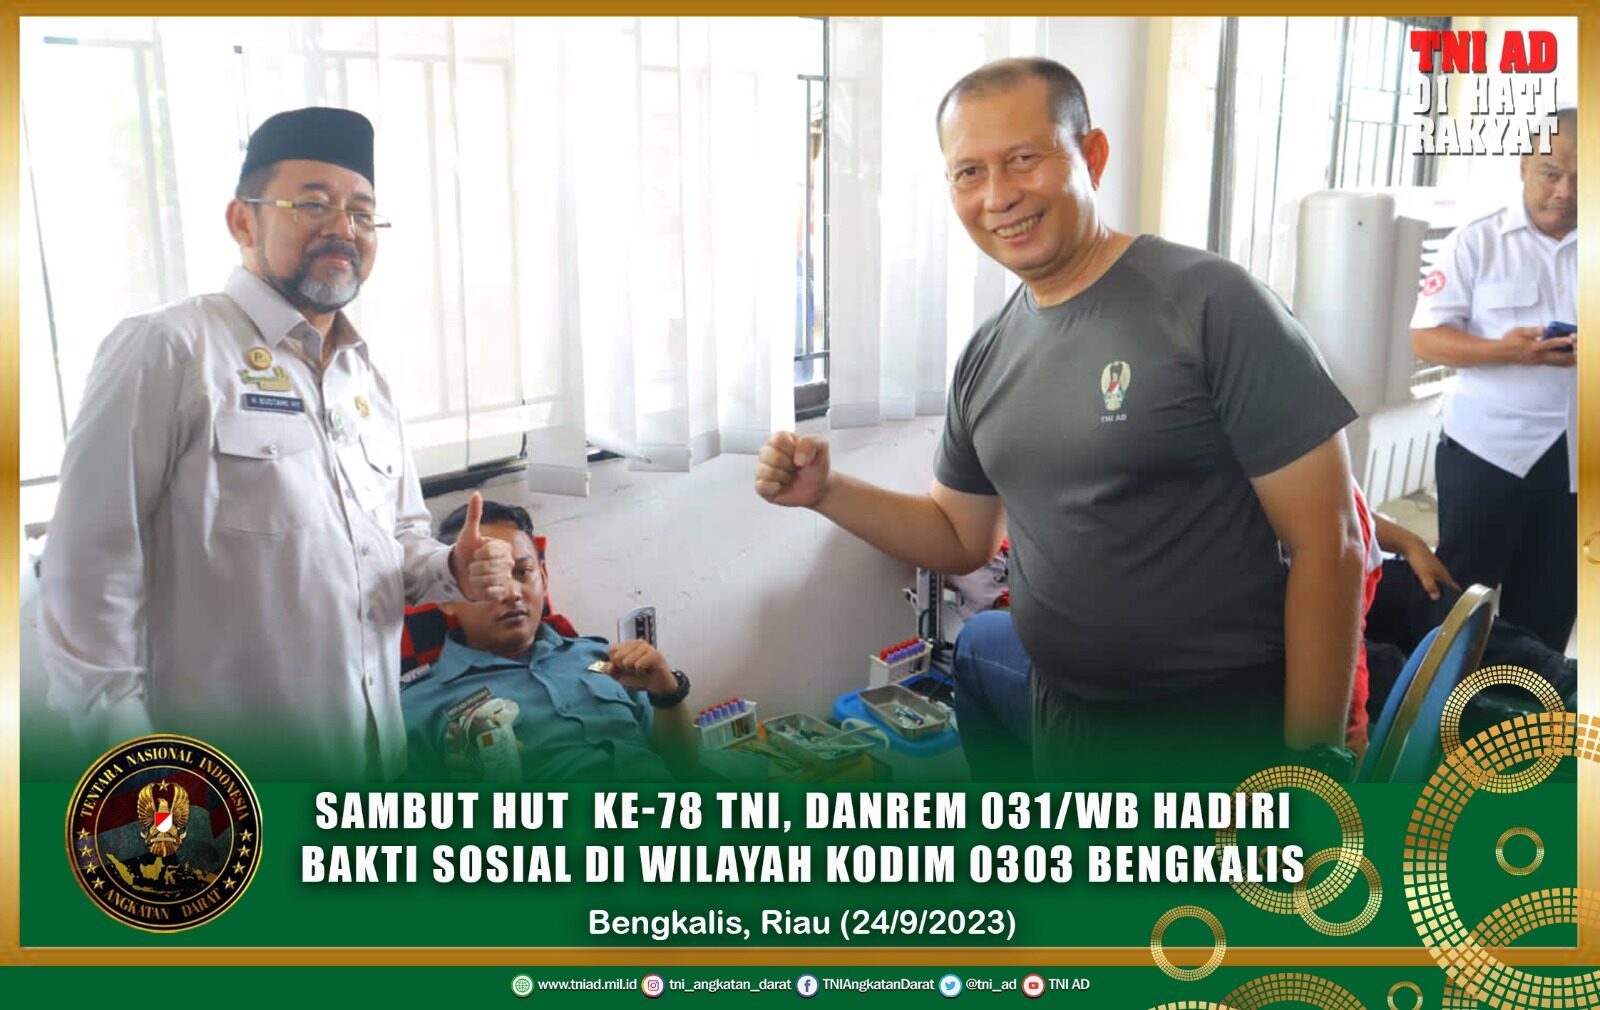 Sambut HUT ke-78 TNI, Danrem 031/WB Hadiri Bakti Sosial di wilayah Kodim 0303/Bengkalis